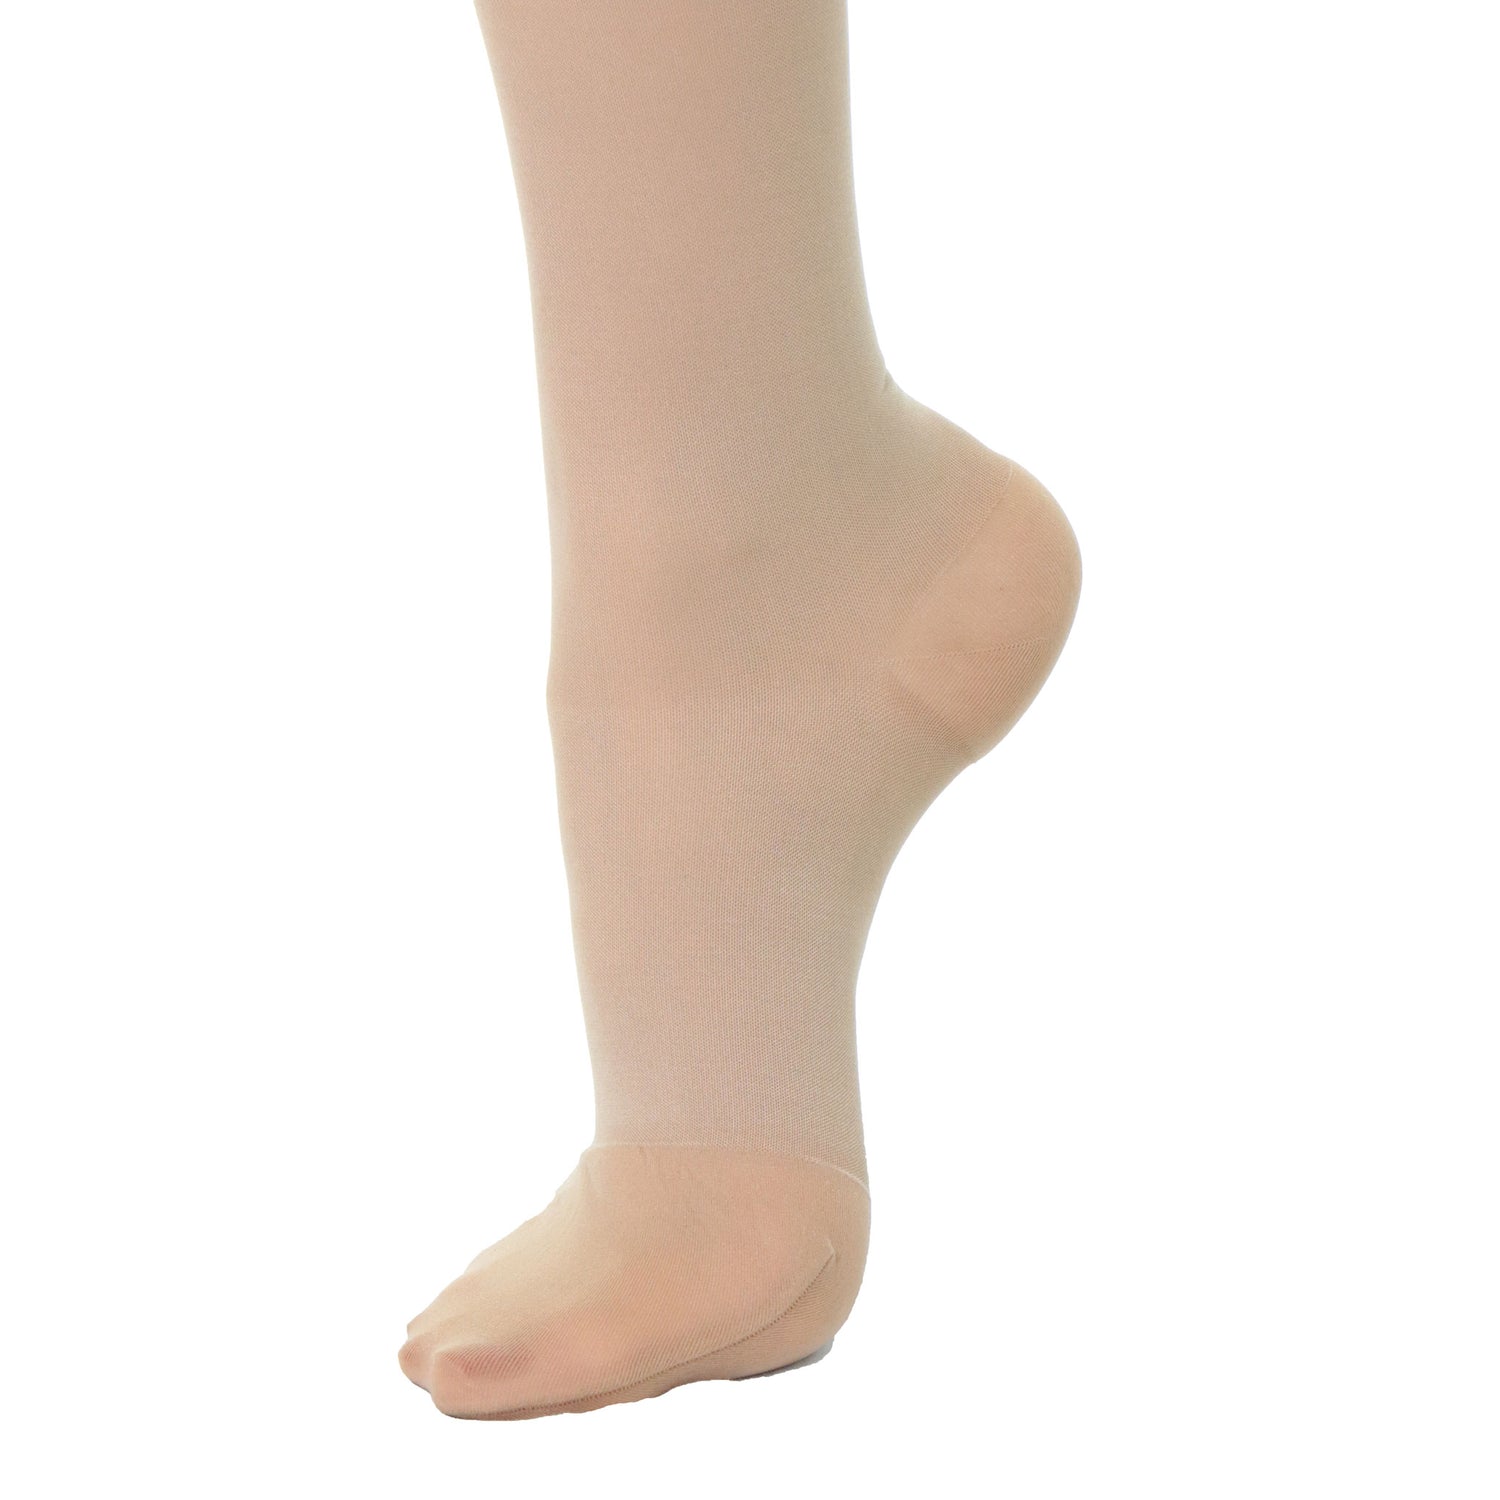 Knee High Compression Socks for Women & Men 30-40 mmHg - Best